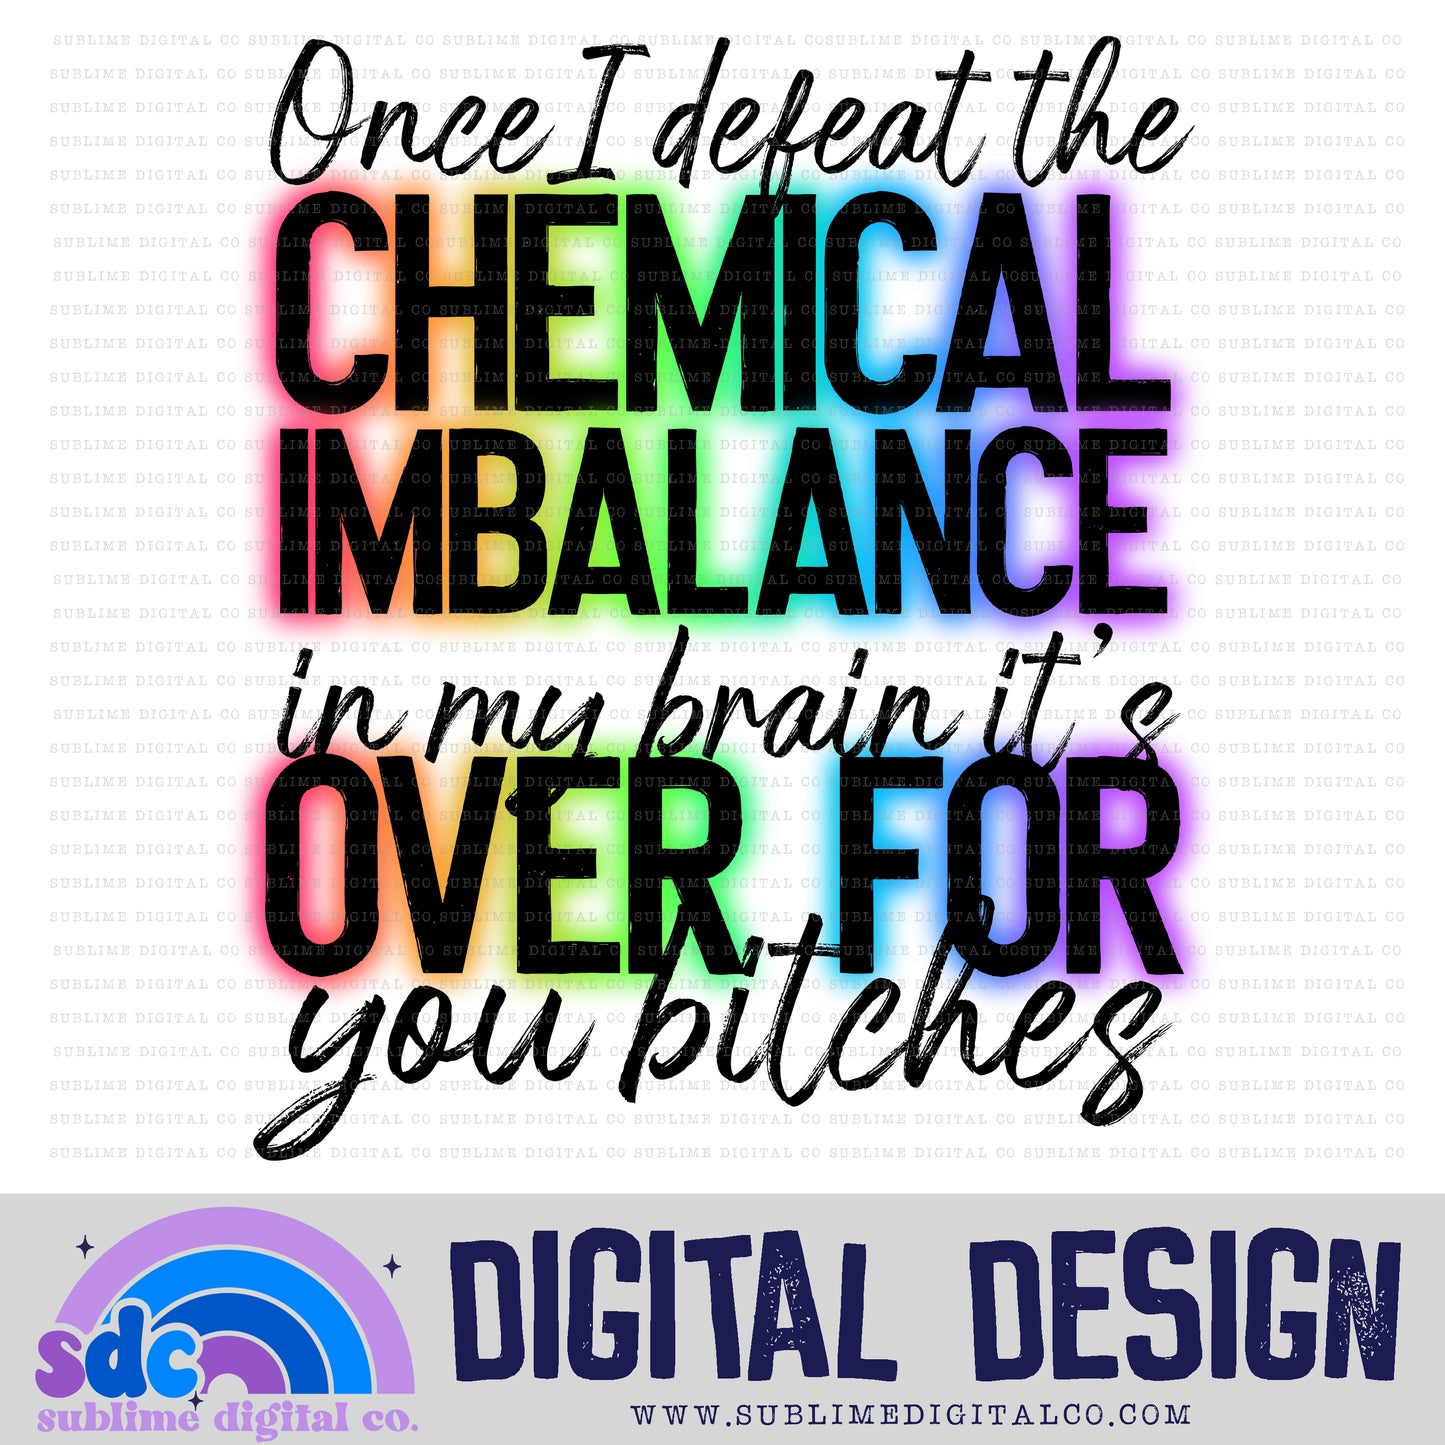 Mental Health • Digital Design Bundles • Instant Download • Sublimation Design